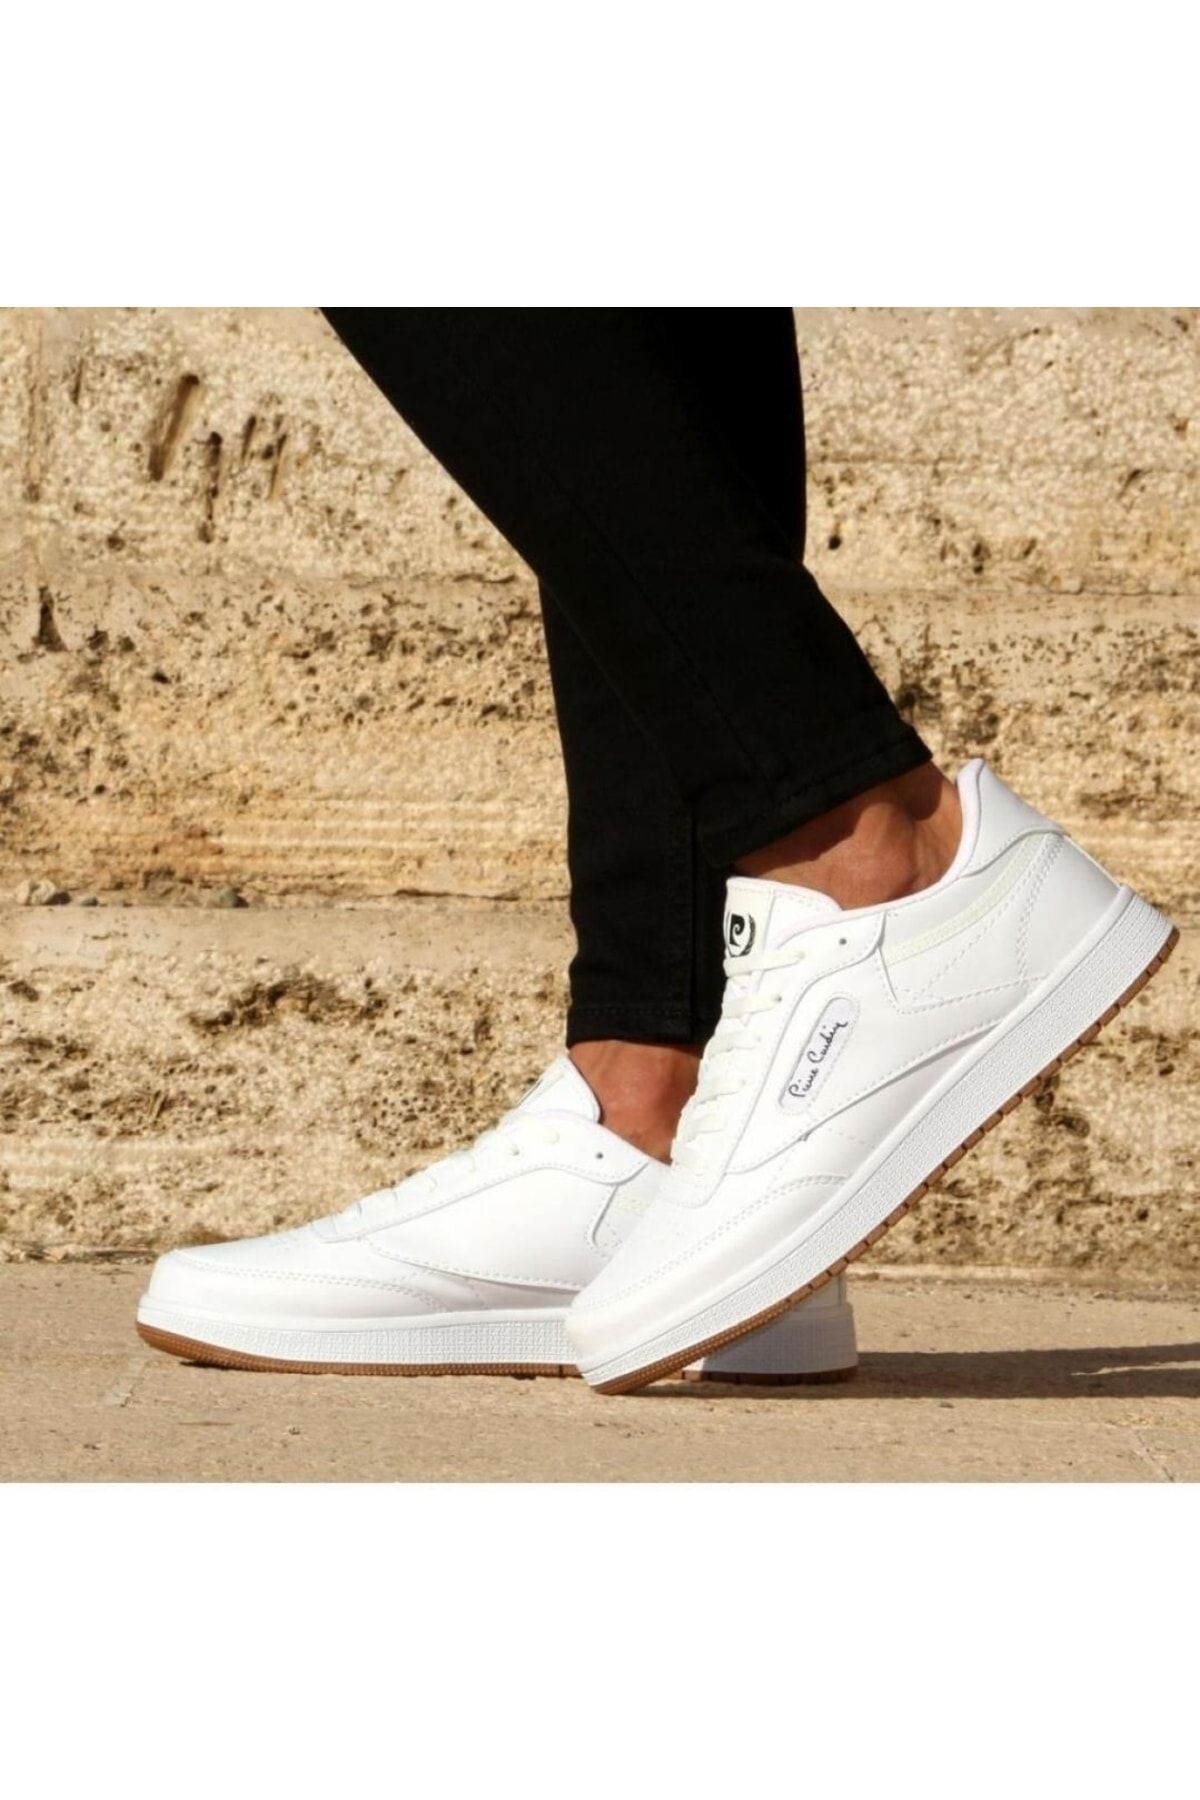 Pierre Cardin Beyaz - Pc-30813 Erkek Günlük Sneaker Spor Ayakkabı